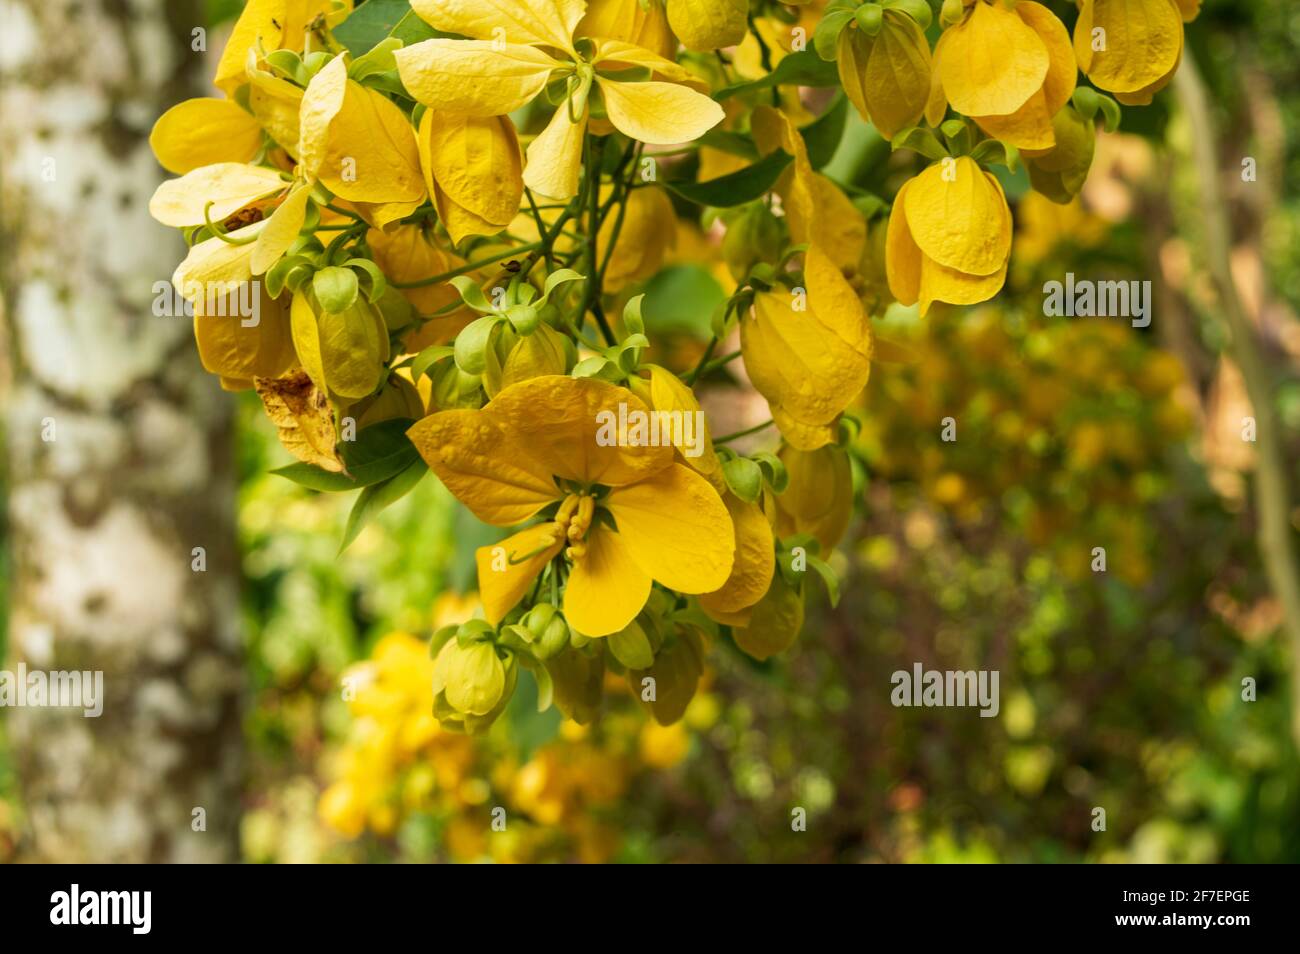 comúnmente conocido como ducha dorada y es una planta de floración